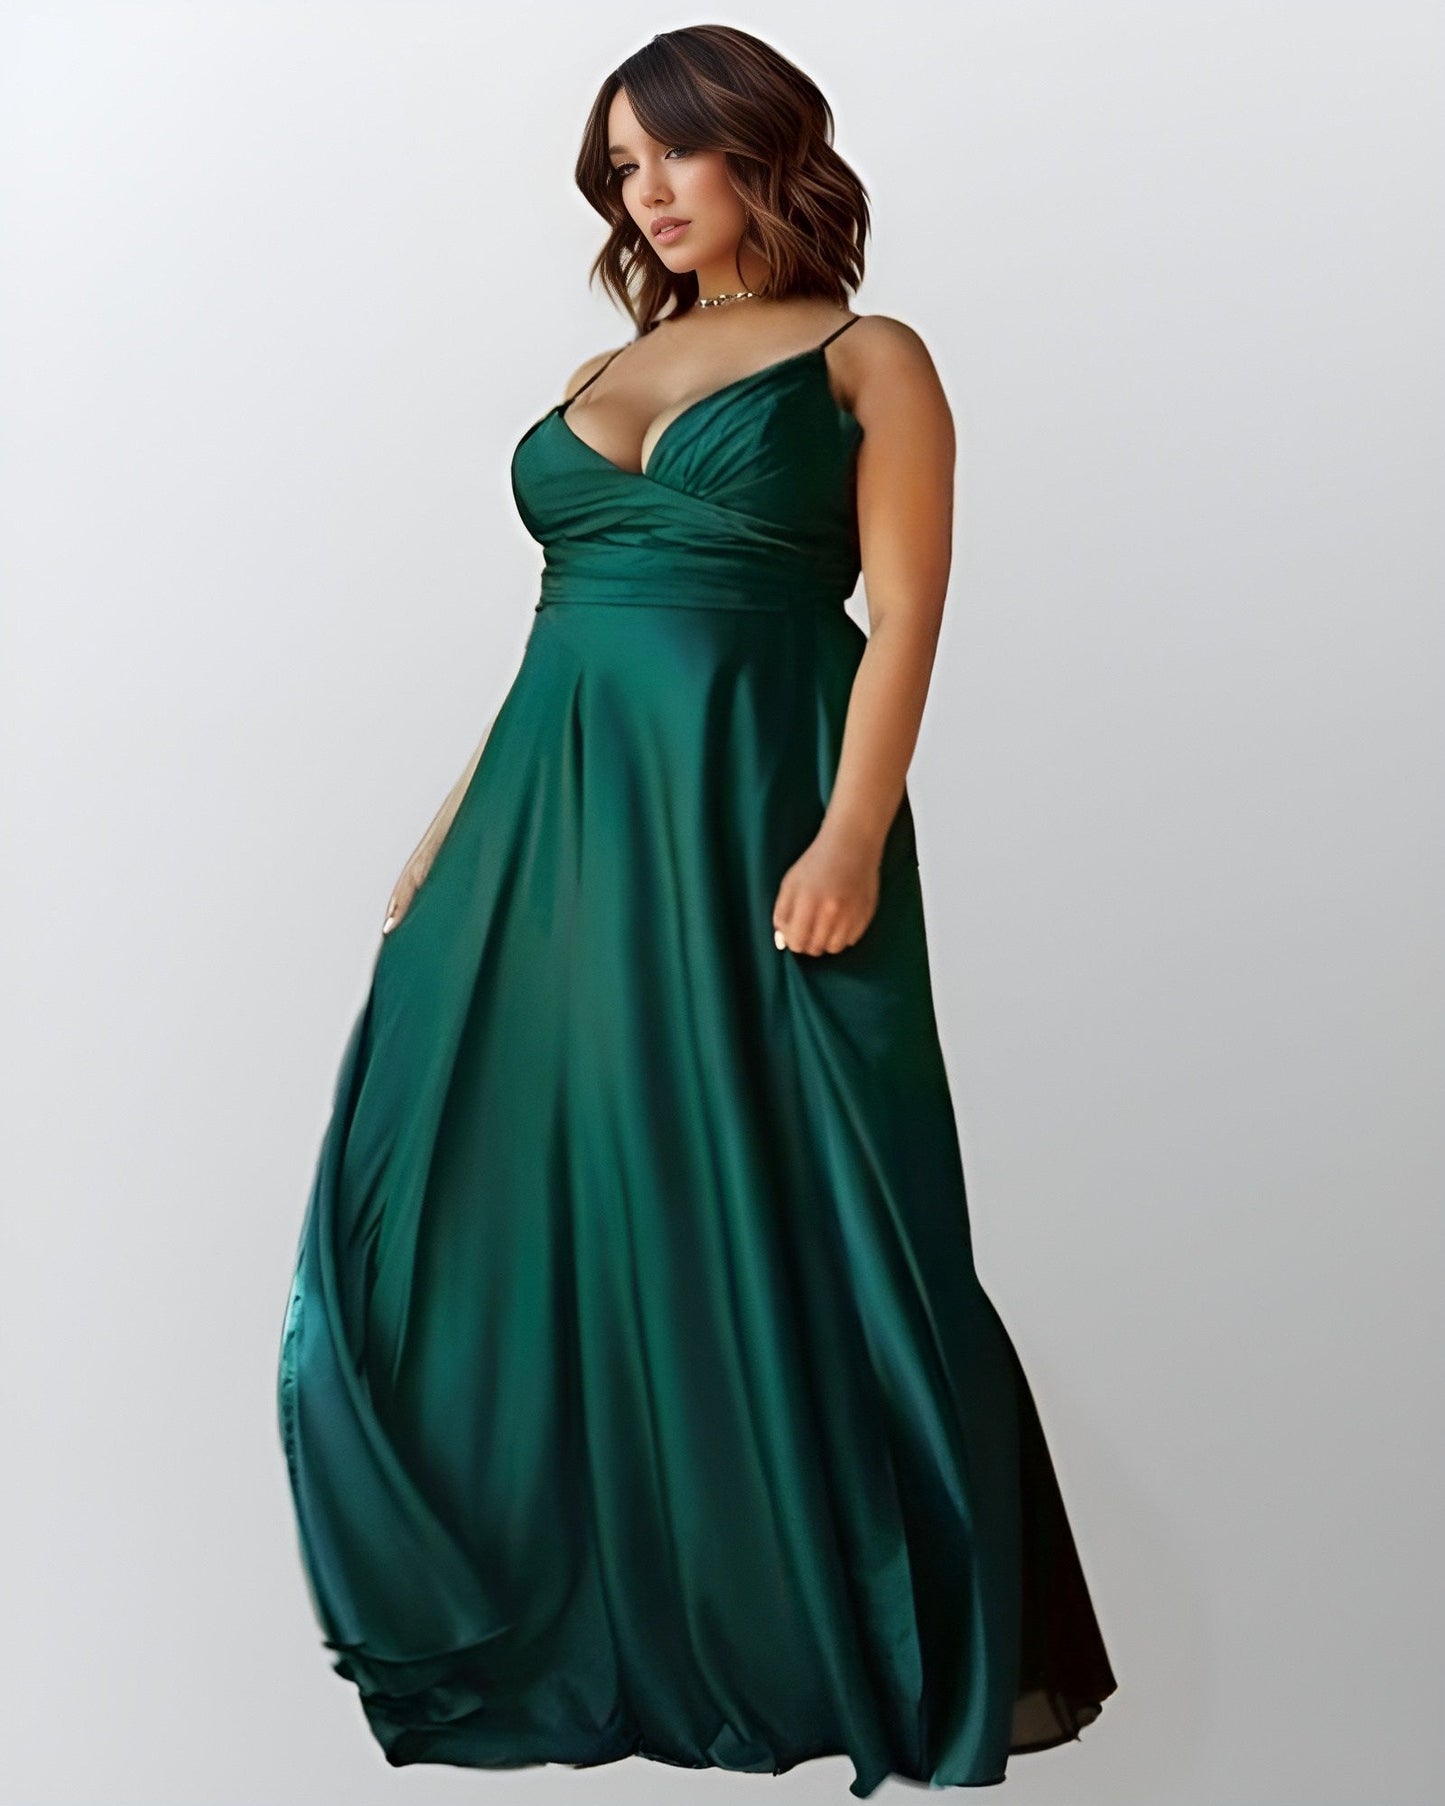 Plus size woman in flattering formal emerald green dress.